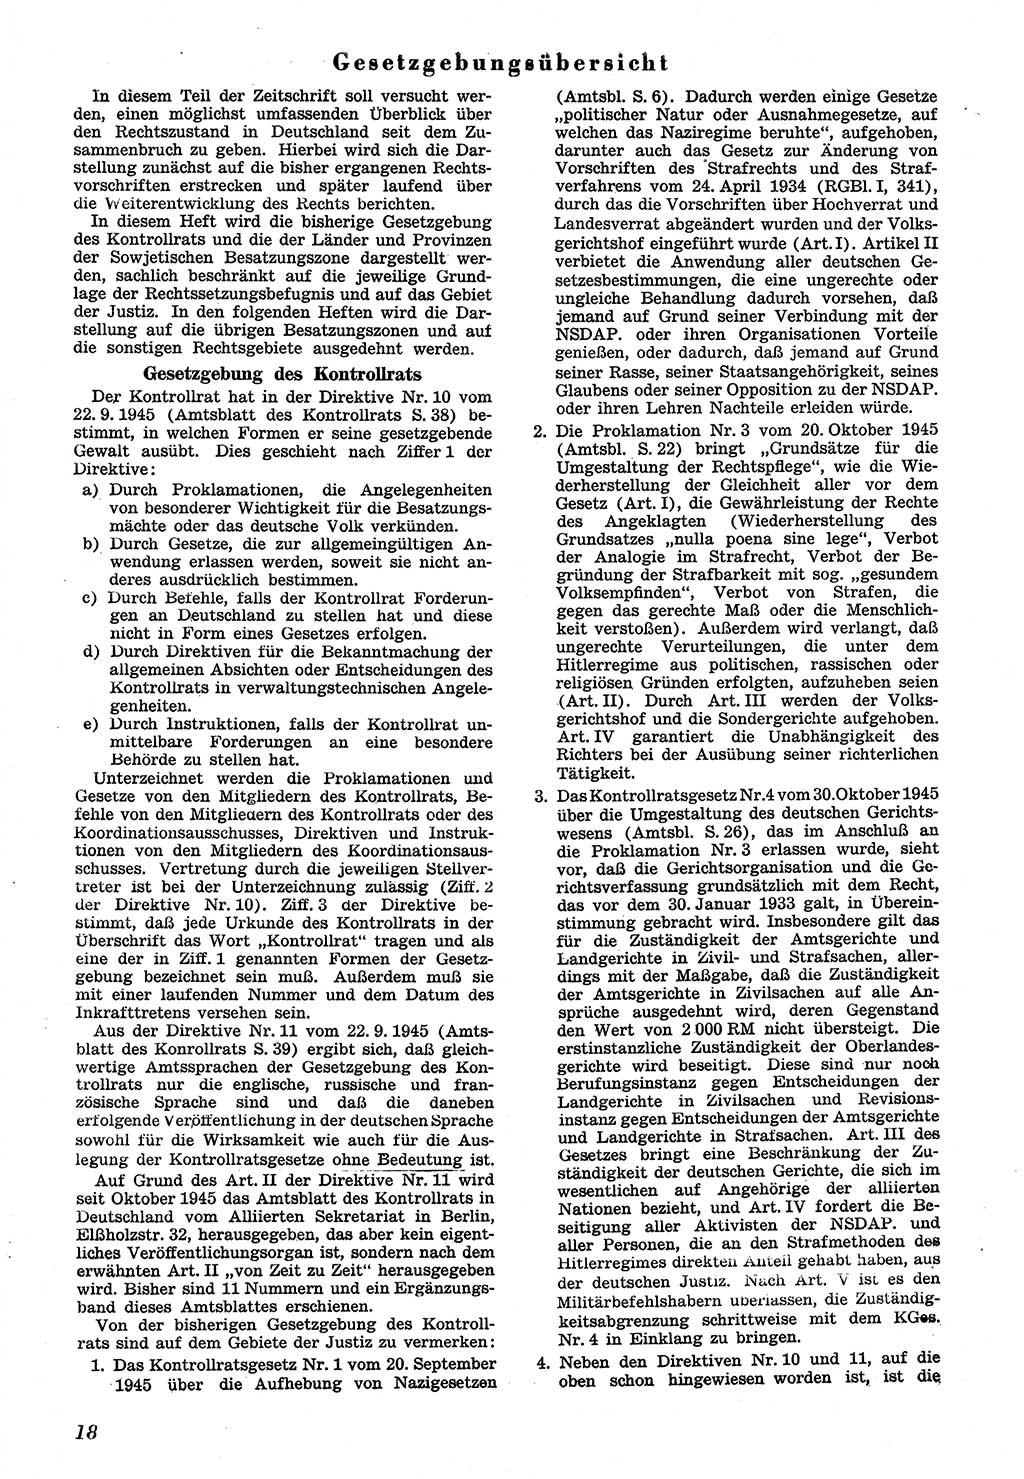 Neue Justiz (NJ), Zeitschrift für Recht und Rechtswissenschaft [Sowjetische Besatzungszone (SBZ) Deutschland], 1. Jahrgang 1947, Seite 18 (NJ SBZ Dtl. 1947, S. 18)